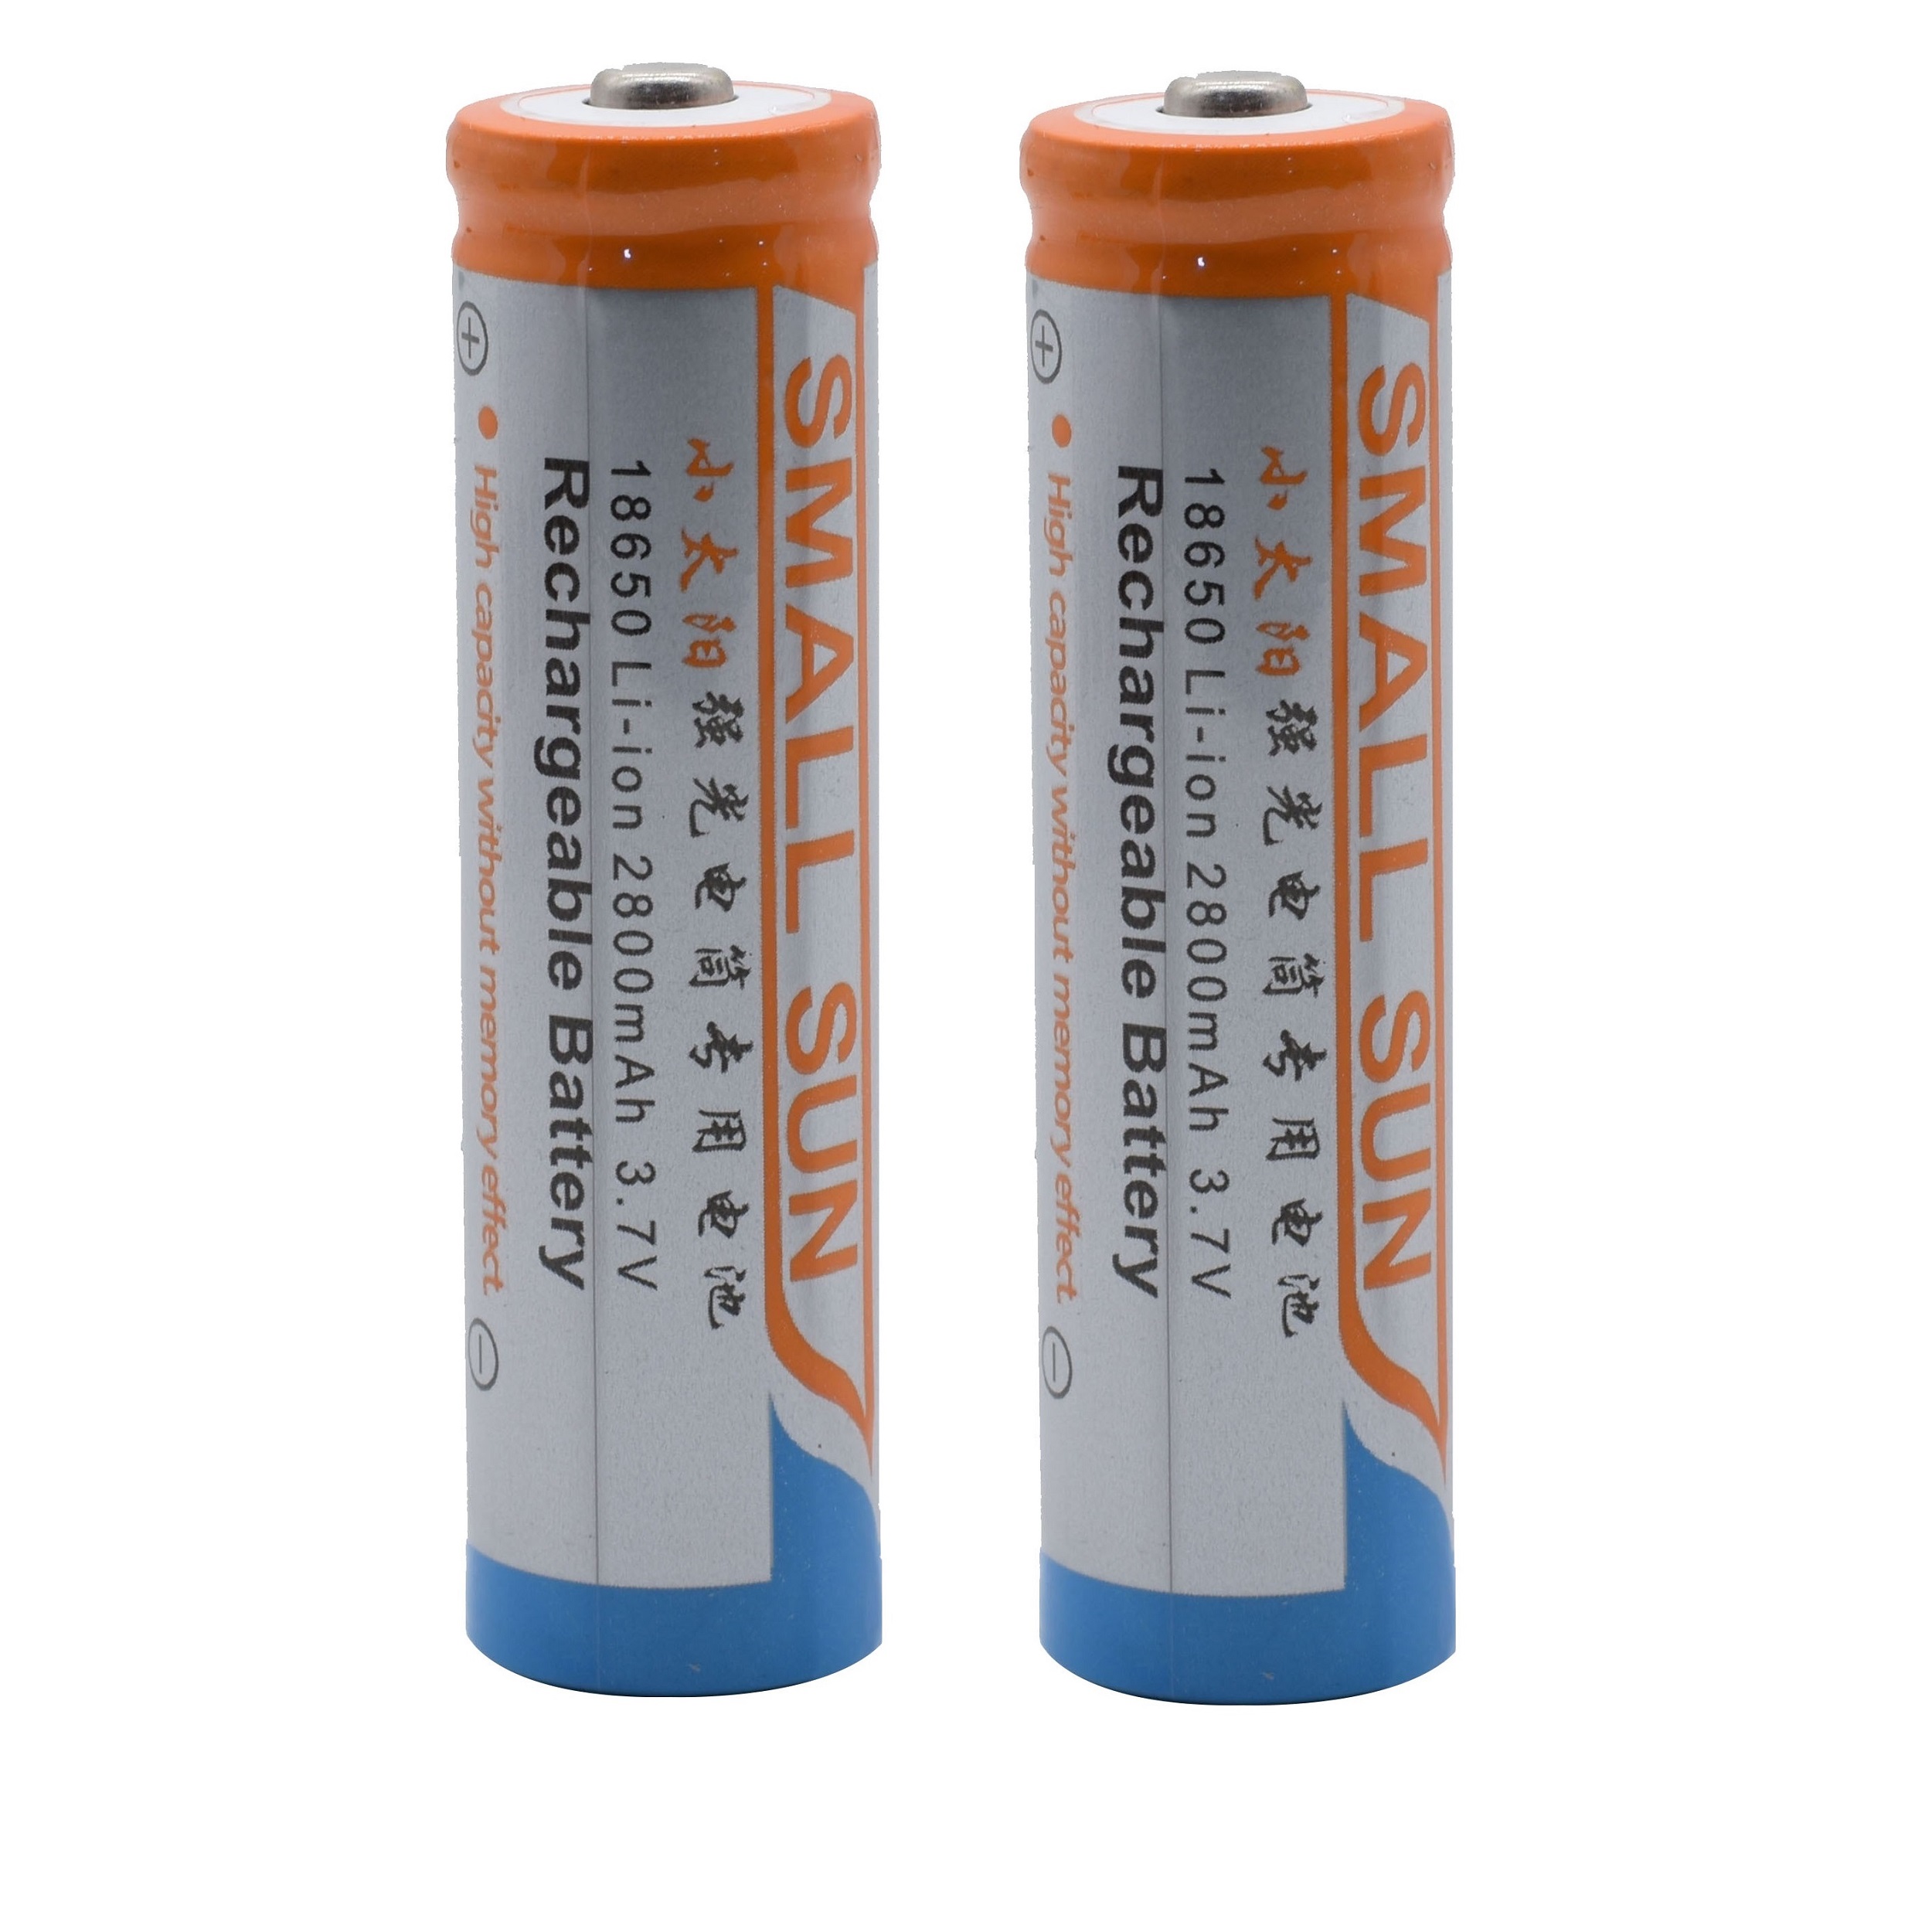 باتری لیتیوم-یون قابل شارژ اسمال سان کد cmp18650 ظرفیت 2800میلی آمپرساعت بسته 2 عددی